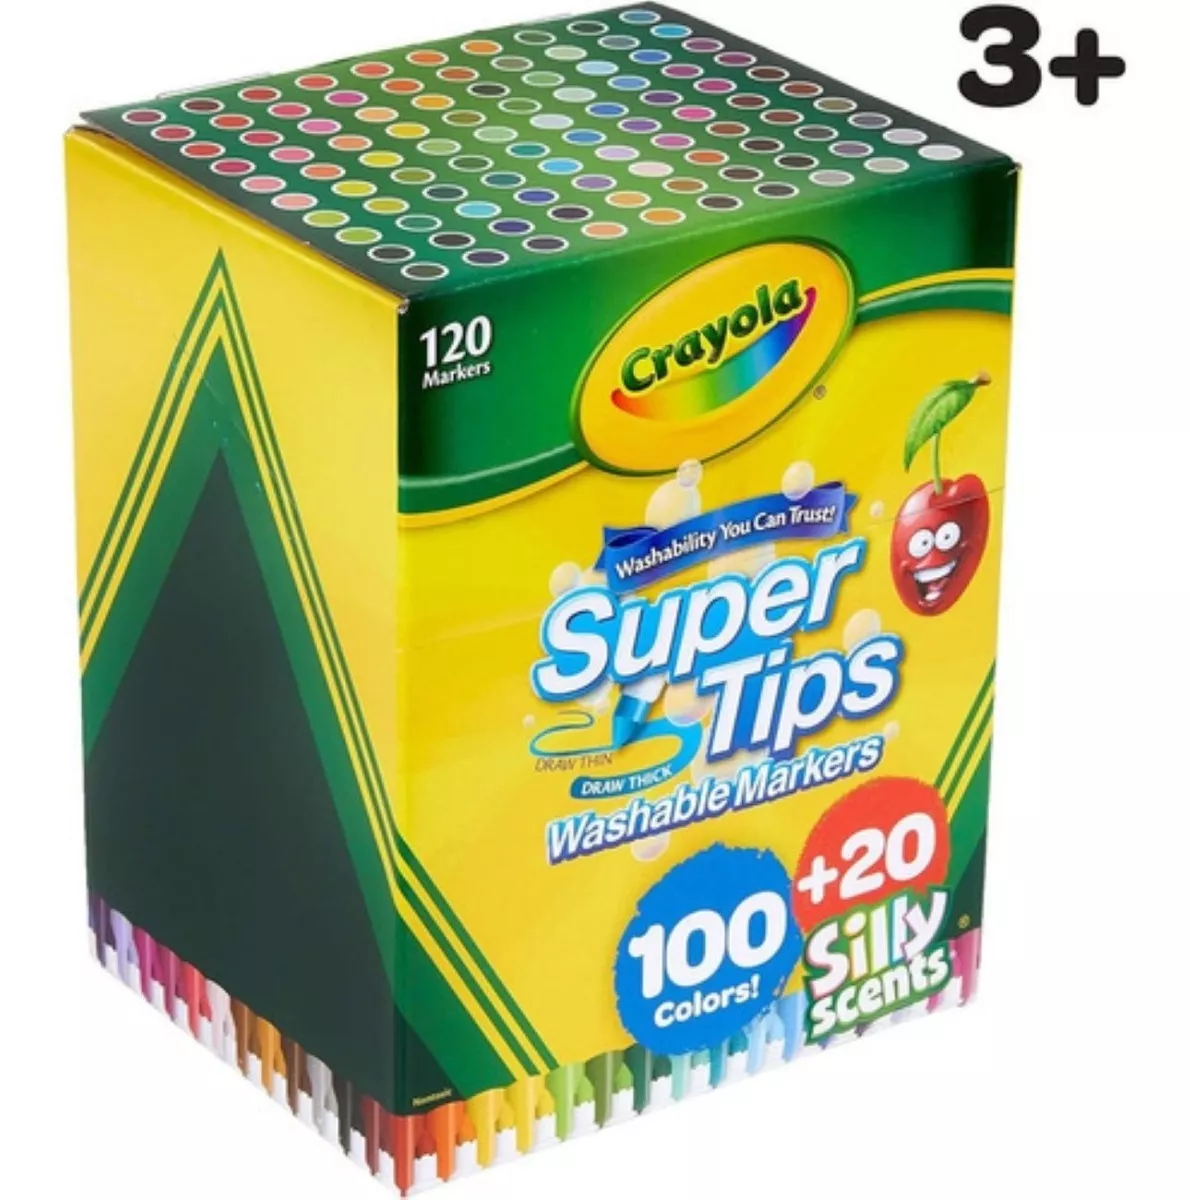 Crayola Super Tips 120 Marcadores Envío Ya!